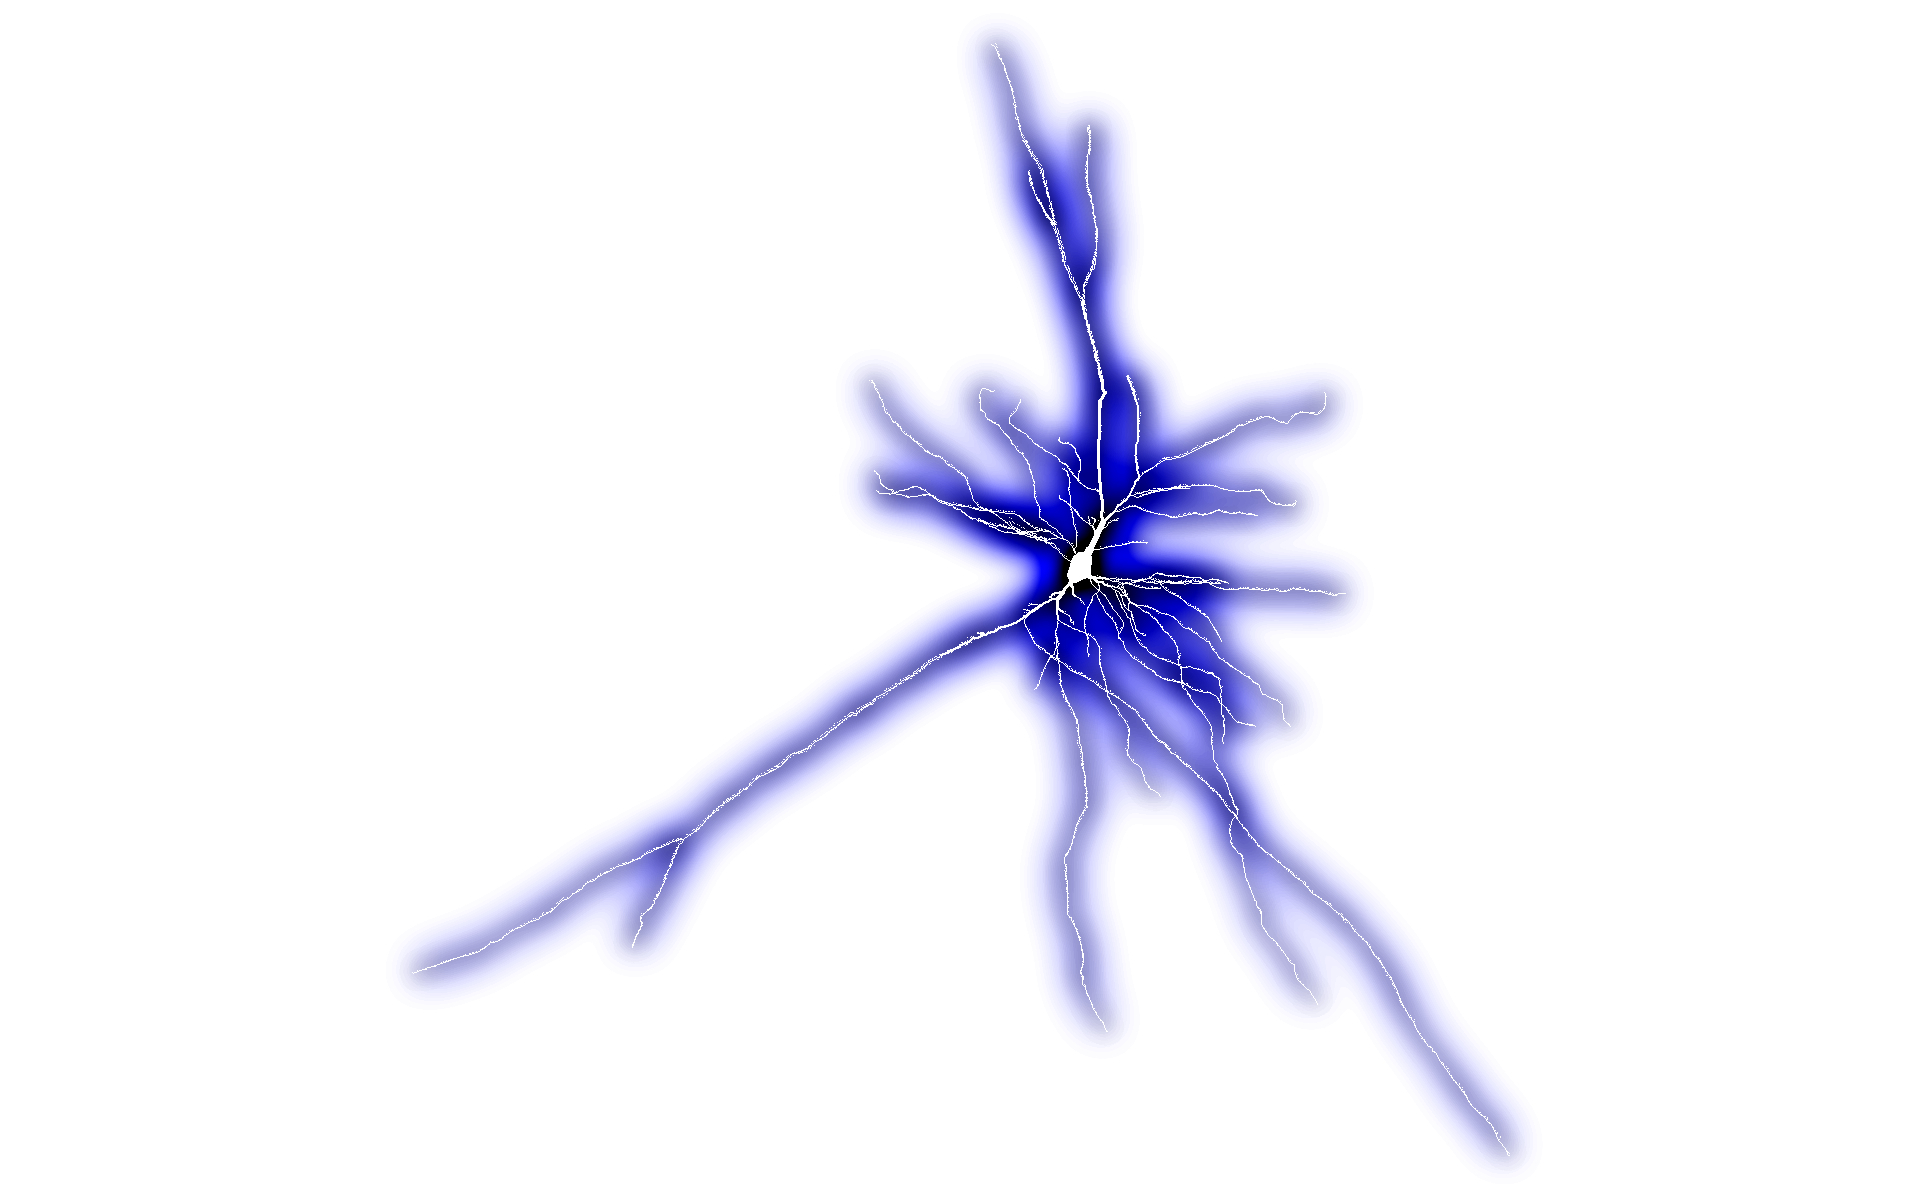 Matriarch Neuron